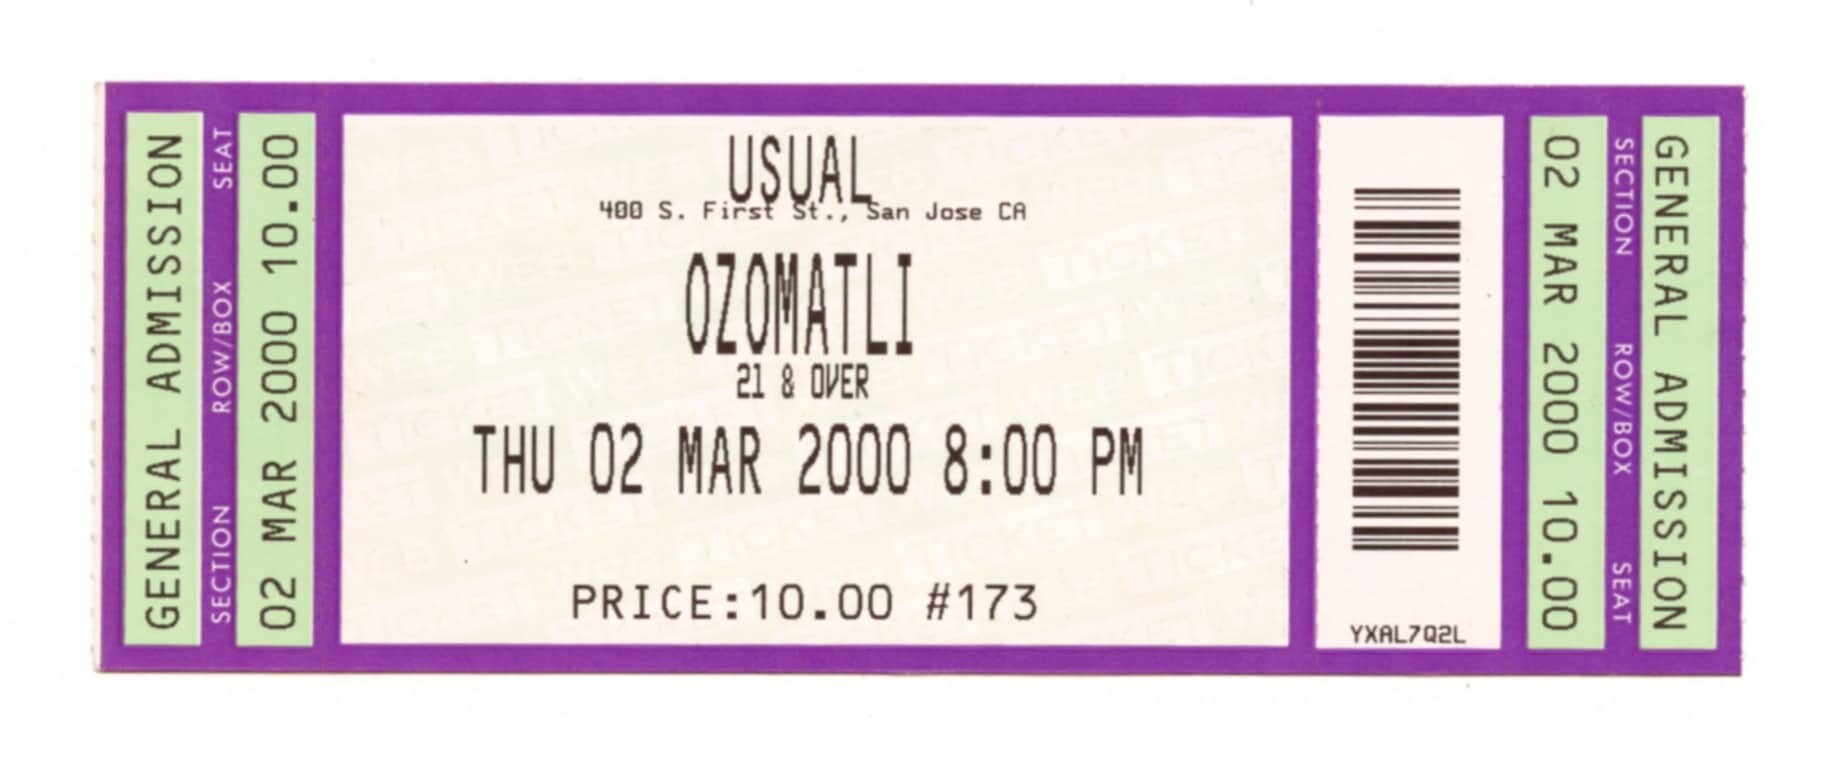 Ozomatli Vintage Ticket Stub 2000 Mar 2 The Usual San Jose